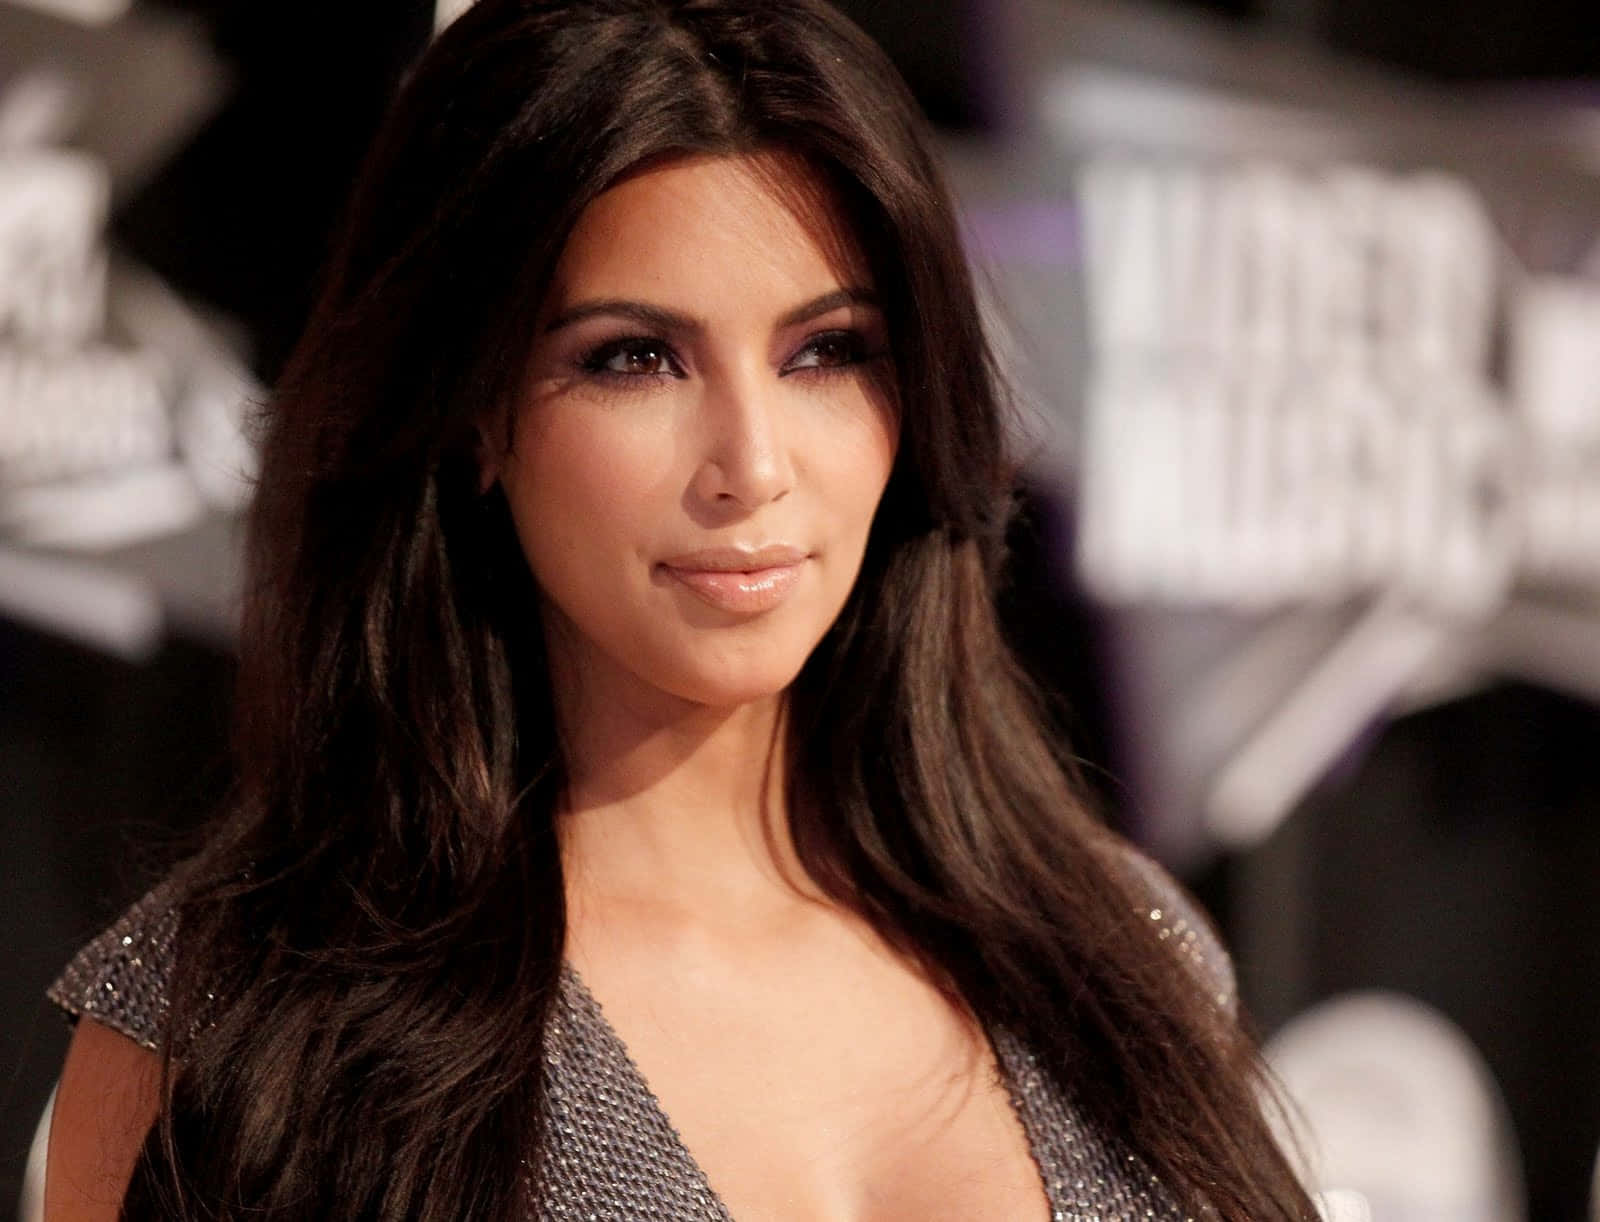 Kimkardashian Apparendo Sicura E Alla Moda.